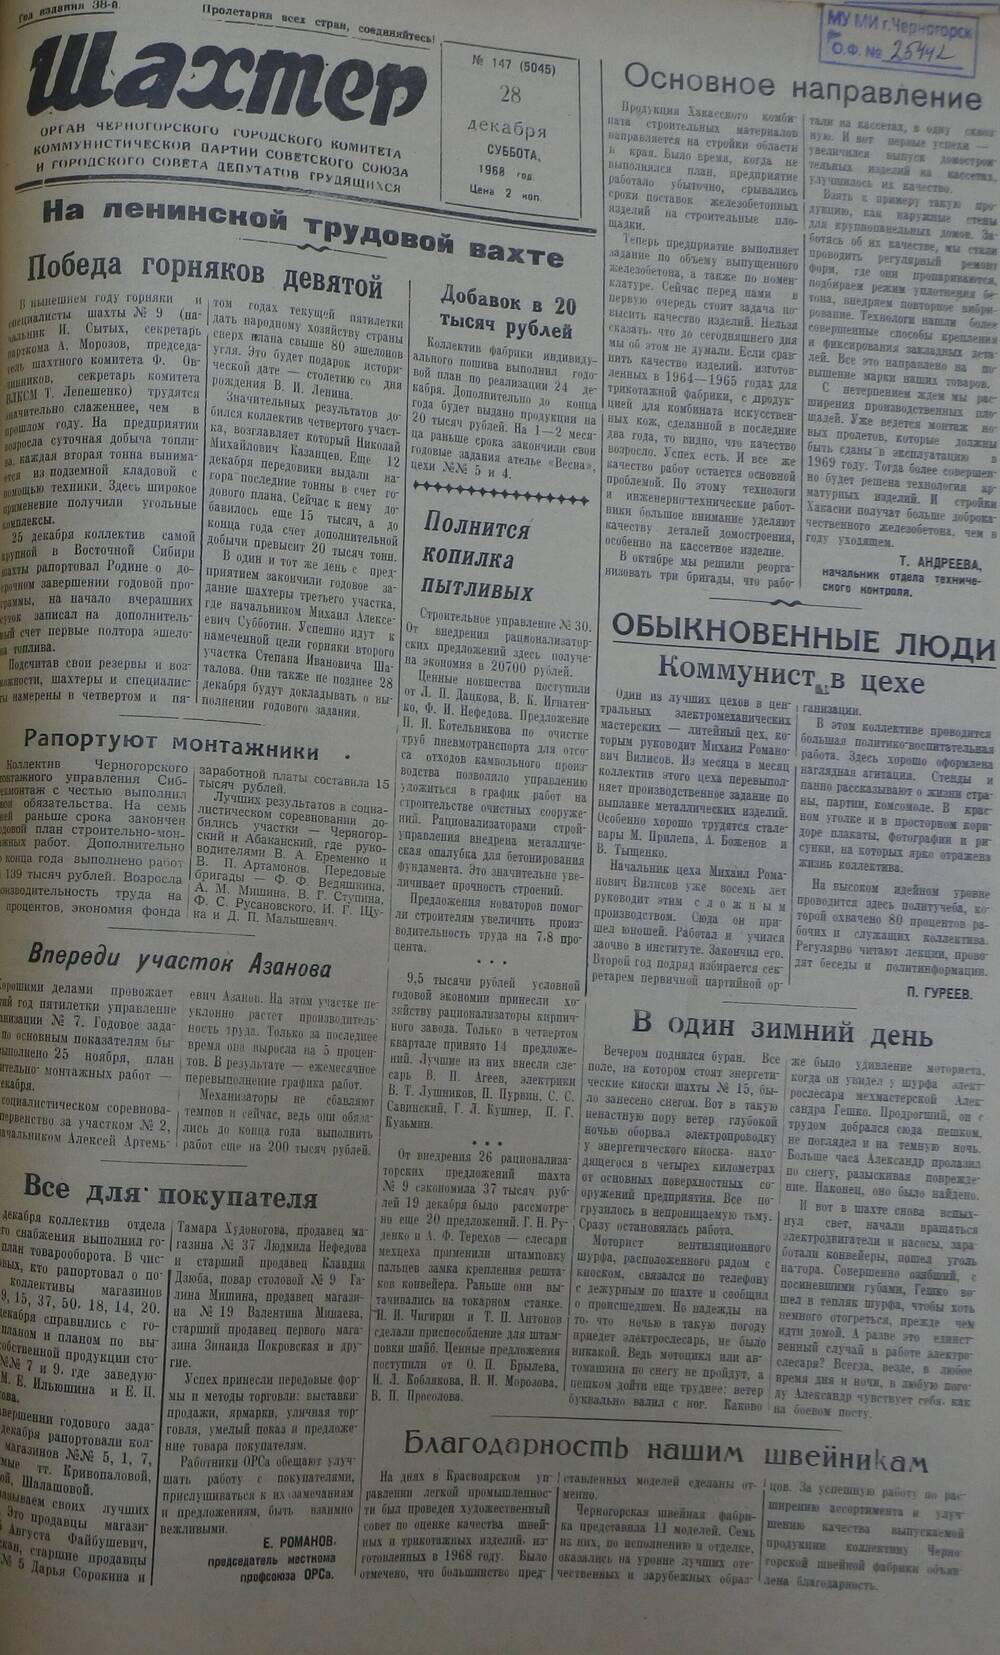 Газета «Шахтер». Выпуск № 147 от 28.12.1968 г.